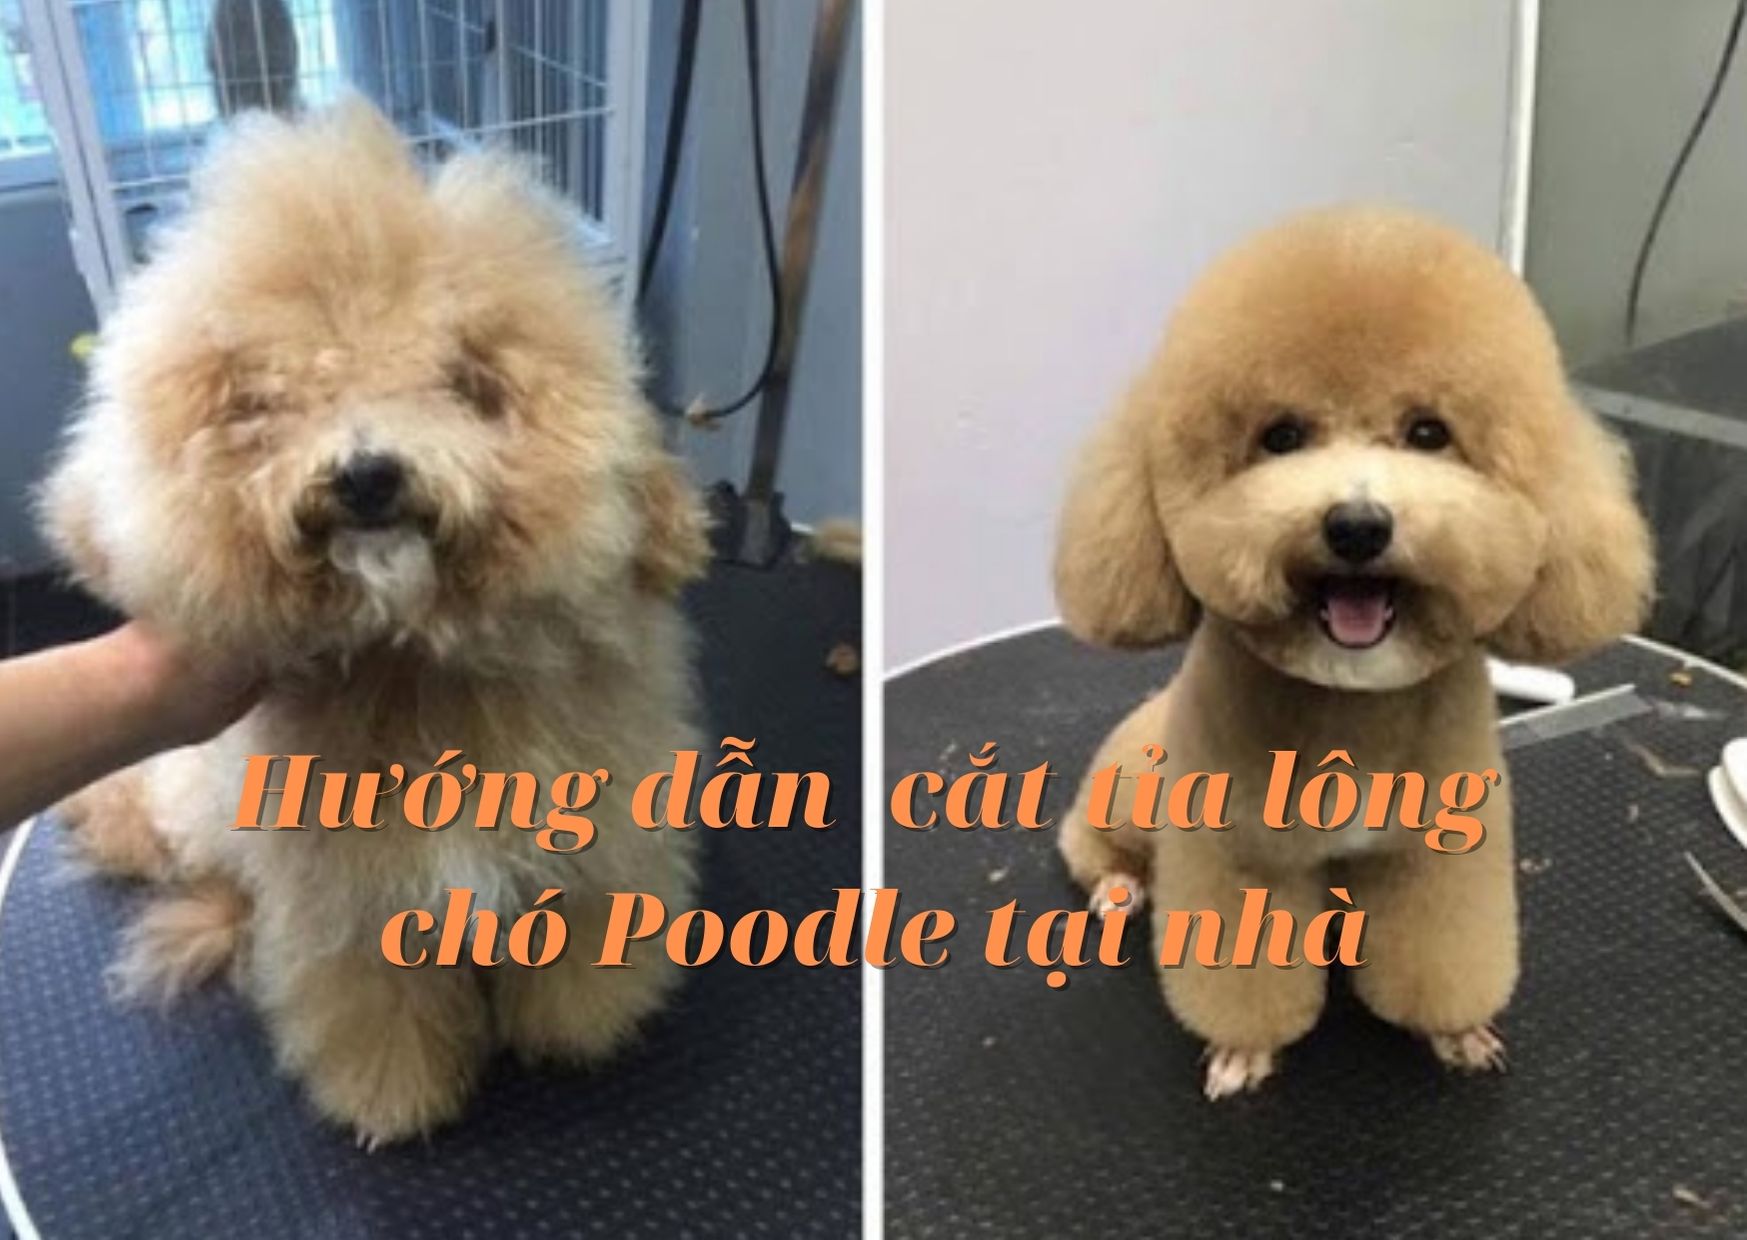 Hãy cùng xem cách cắt tỉa lông cho chó Poodle để cho vẻ ngoài của chúng thật đáng yêu và kiêu sa nhé! Đừng bỏ lỡ bức ảnh đáng yêu này.